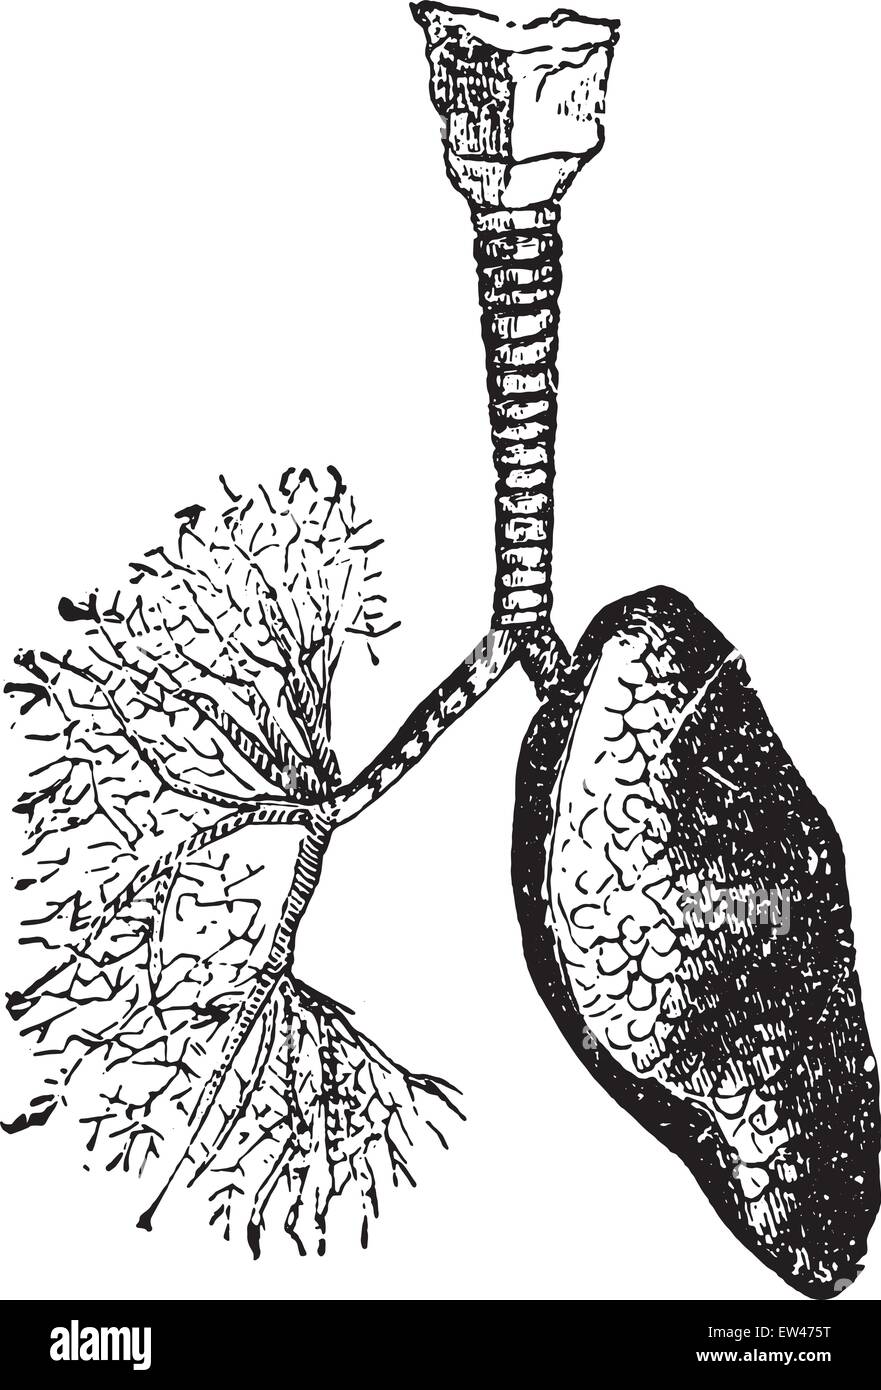 Der Luftröhre und Bronchien Luft in die Lungen, Vintage gravierten Abbildung führen. Stock Vektor